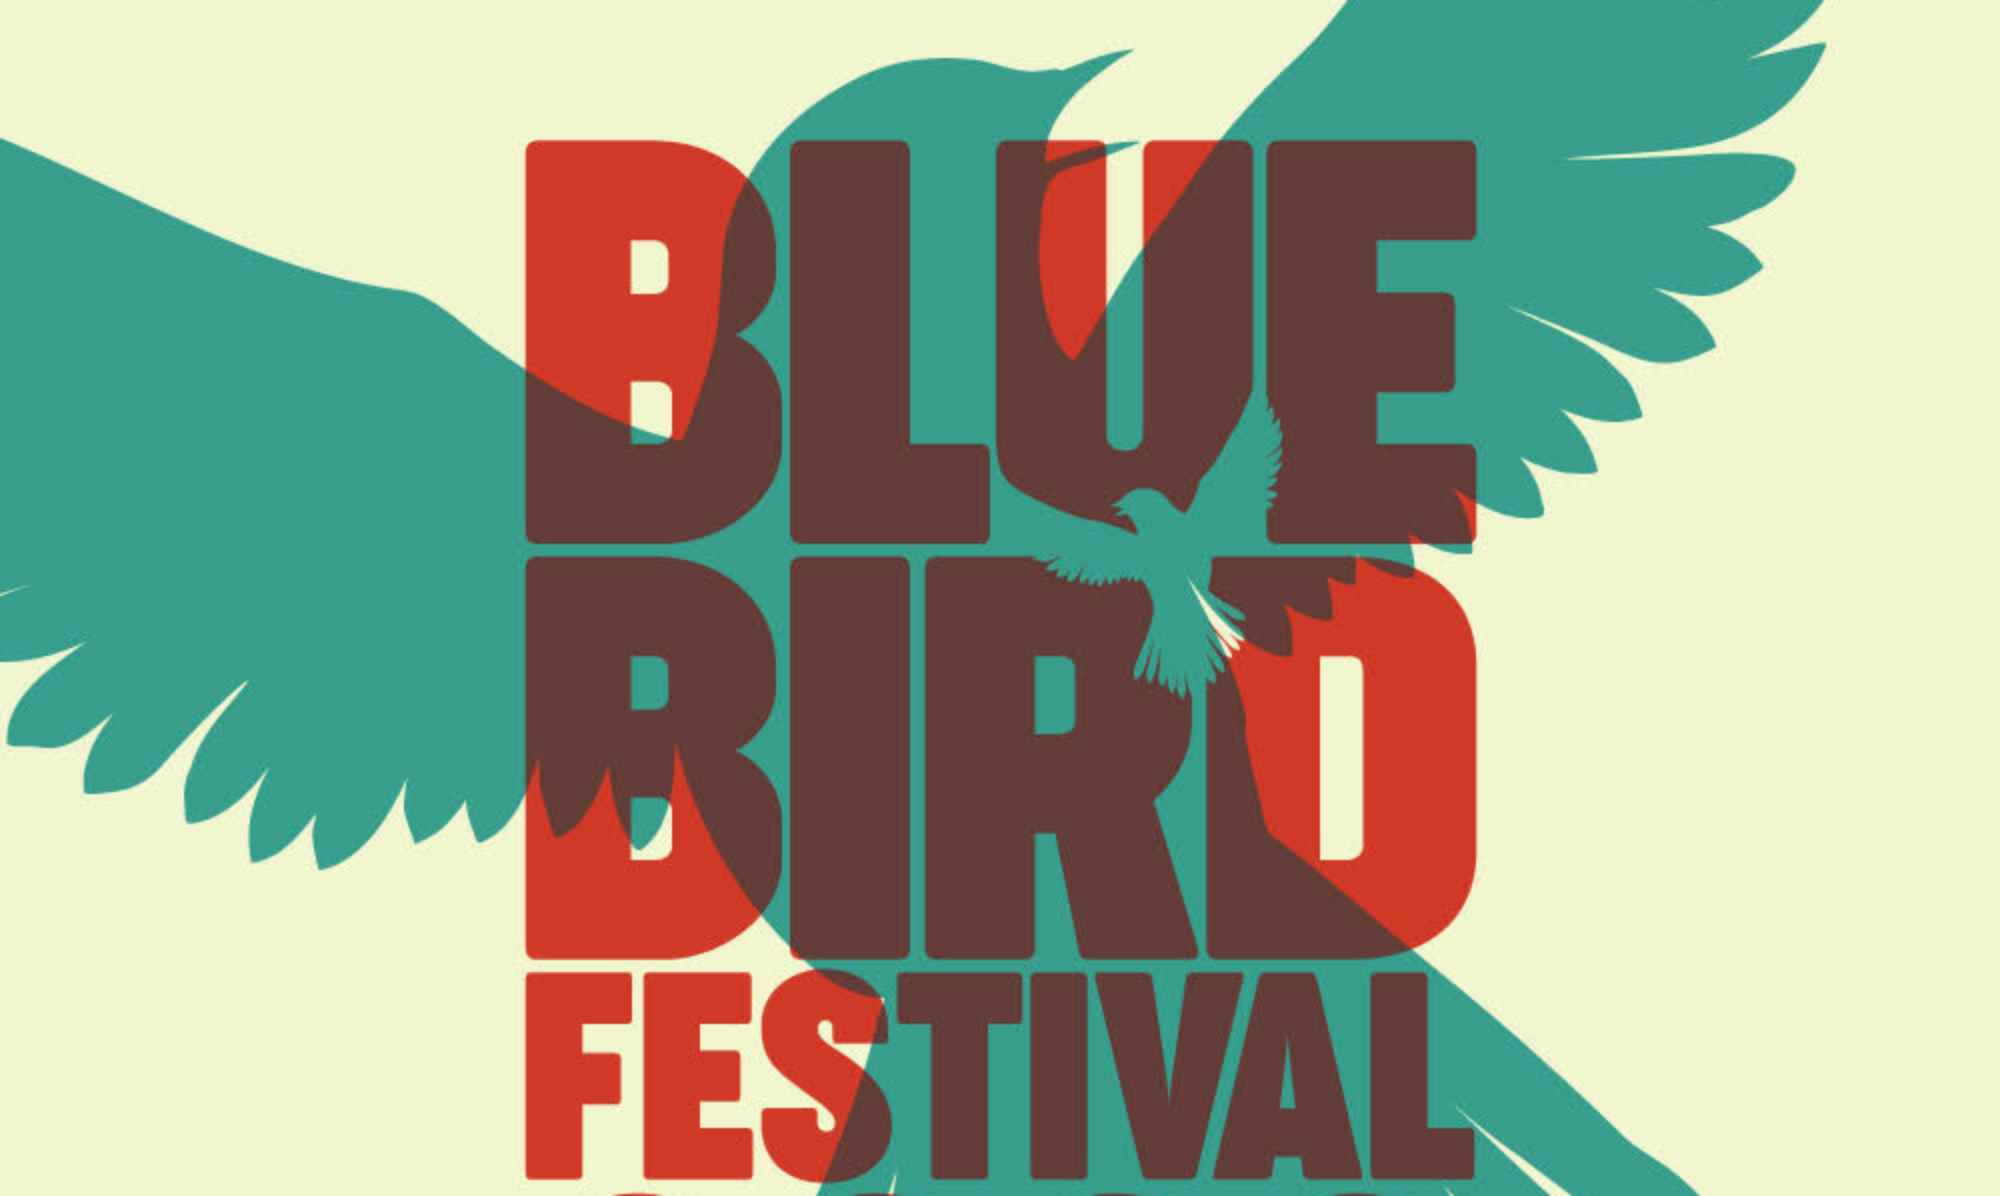 Blue Bird Vienna